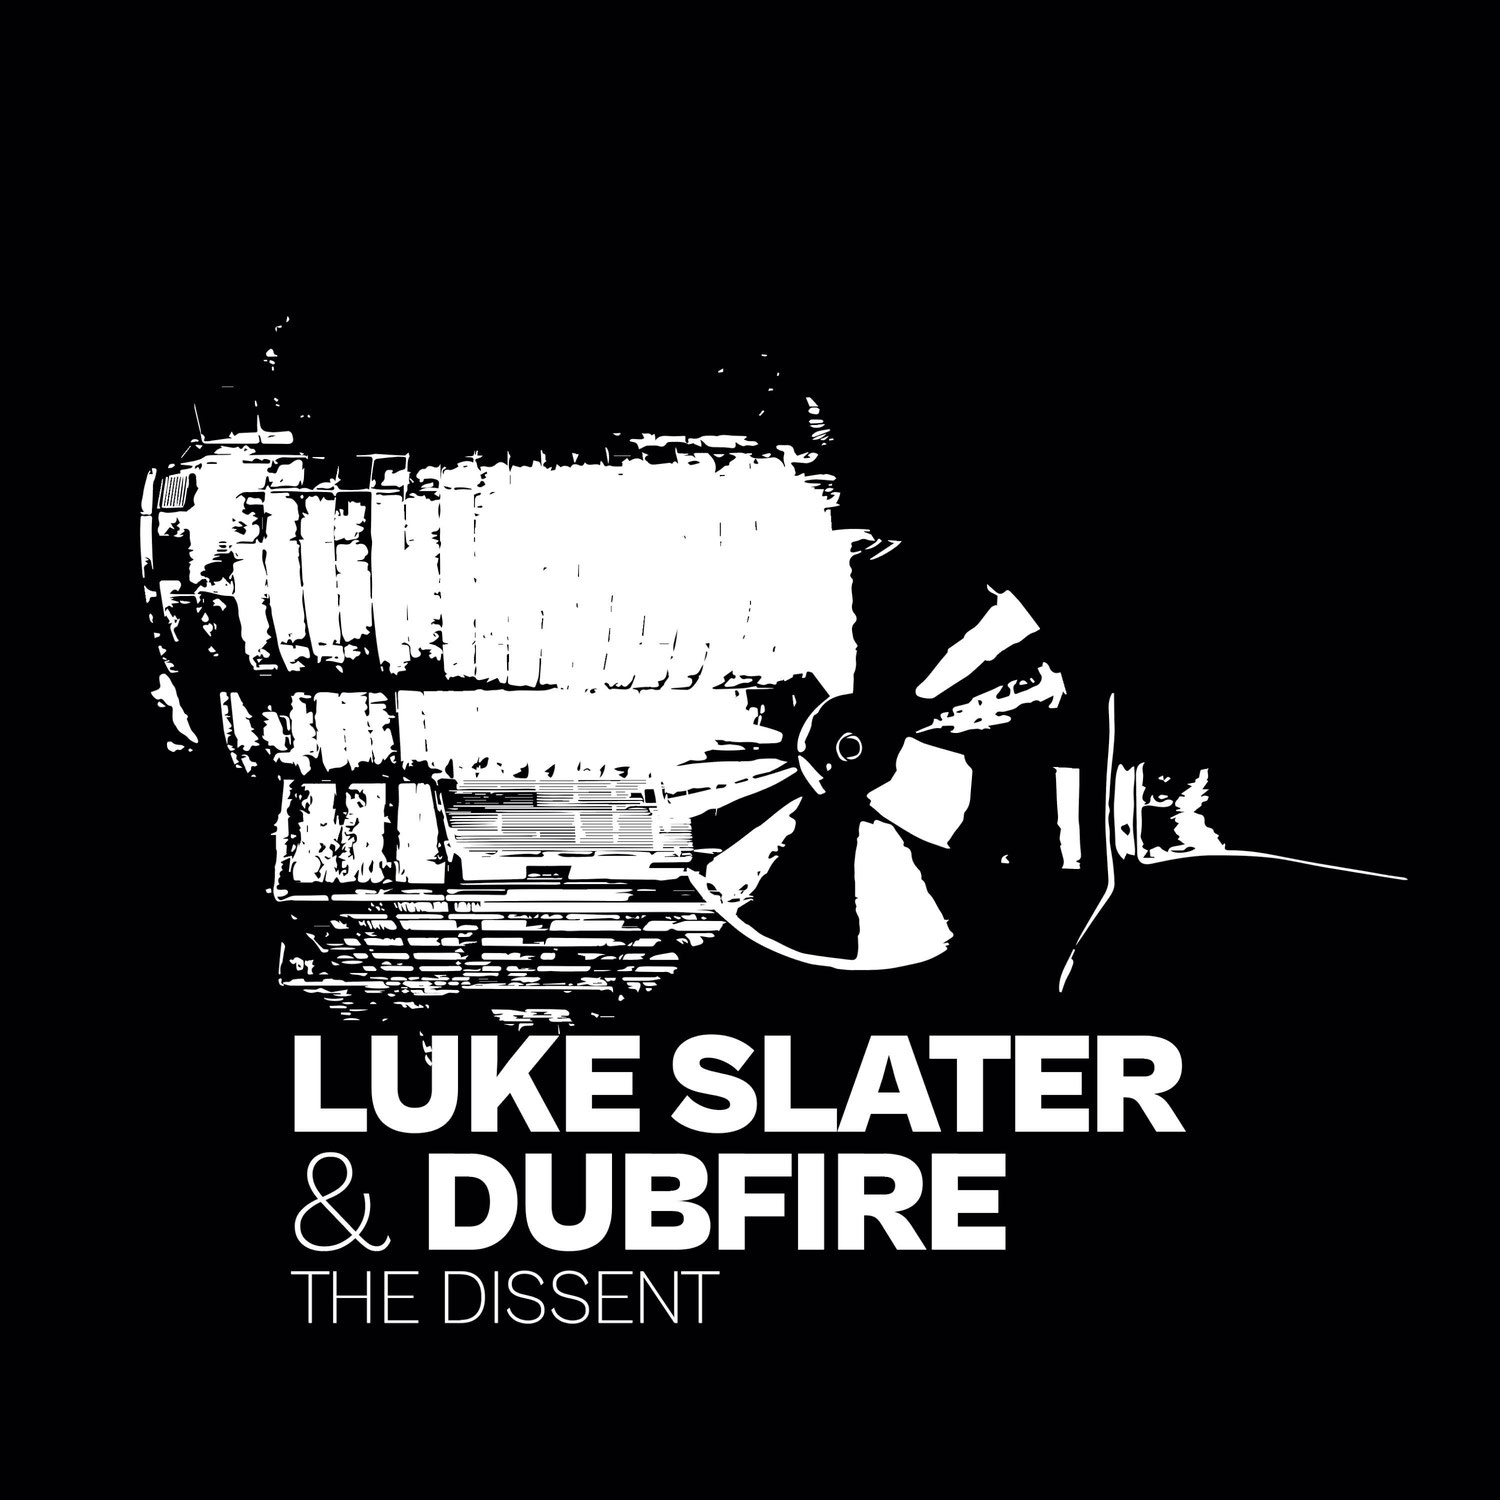 Luke Slater & Dubfire